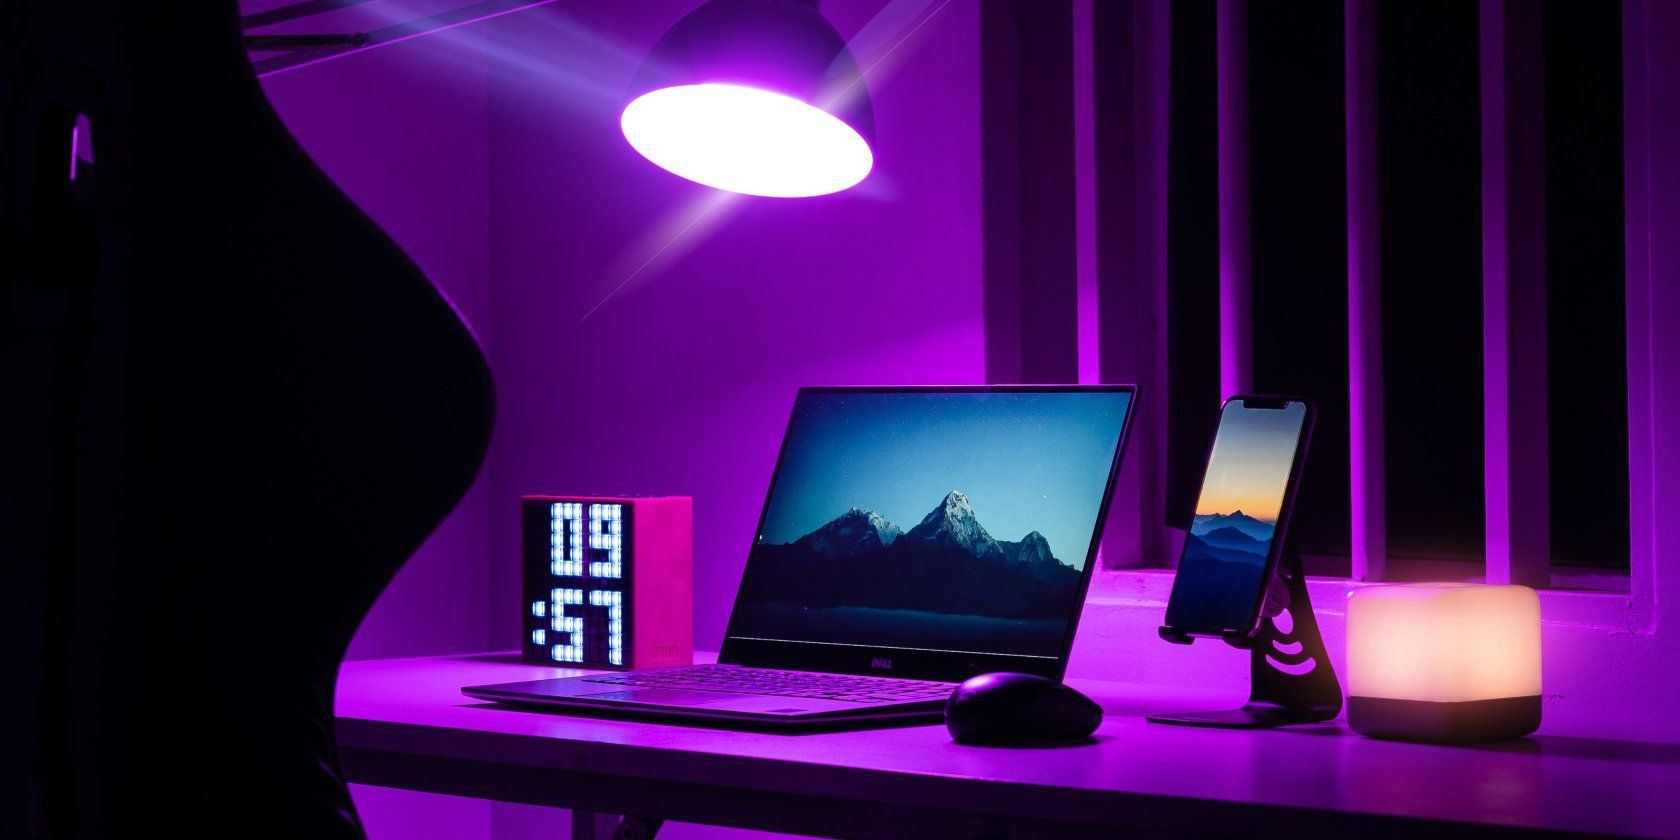 un ordinateur portable à côté d'une souris, d'un téléphone, d'une horloge et d'une souris, éclairé par un éclairage violet